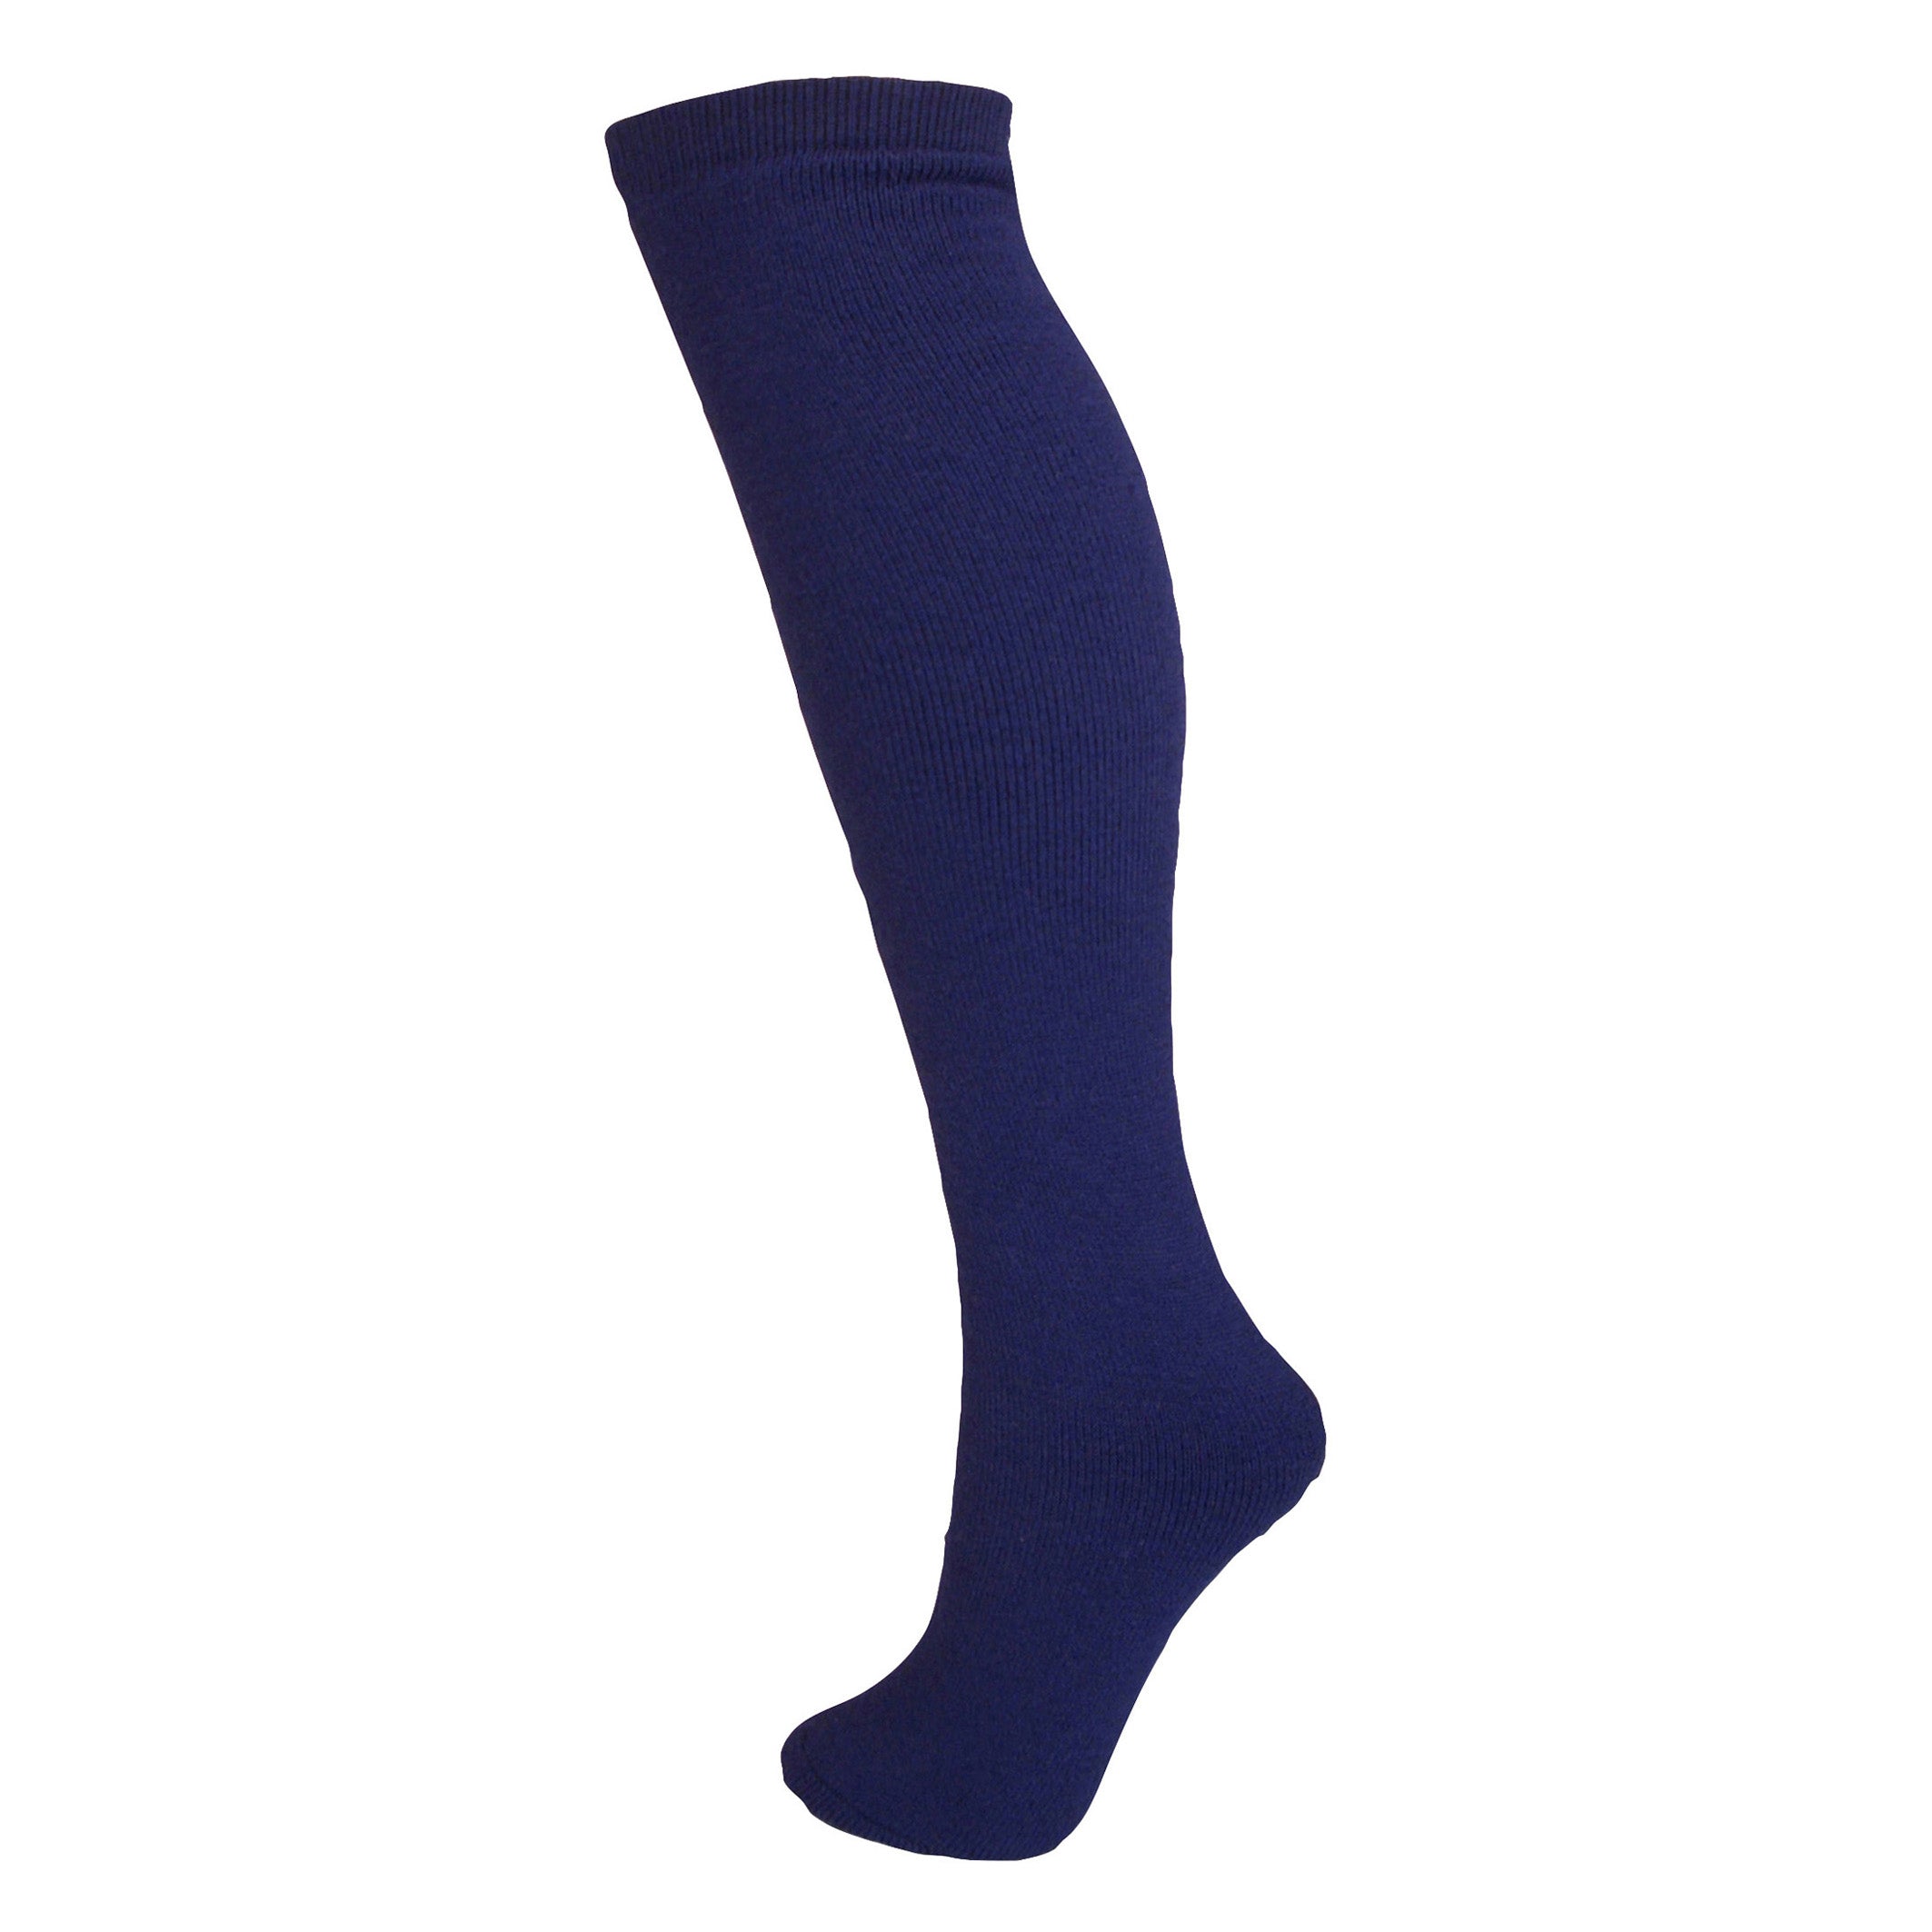 Standard Adult Ski Sock Socks Winter Sports Accessories | Manbi – Manbi ...